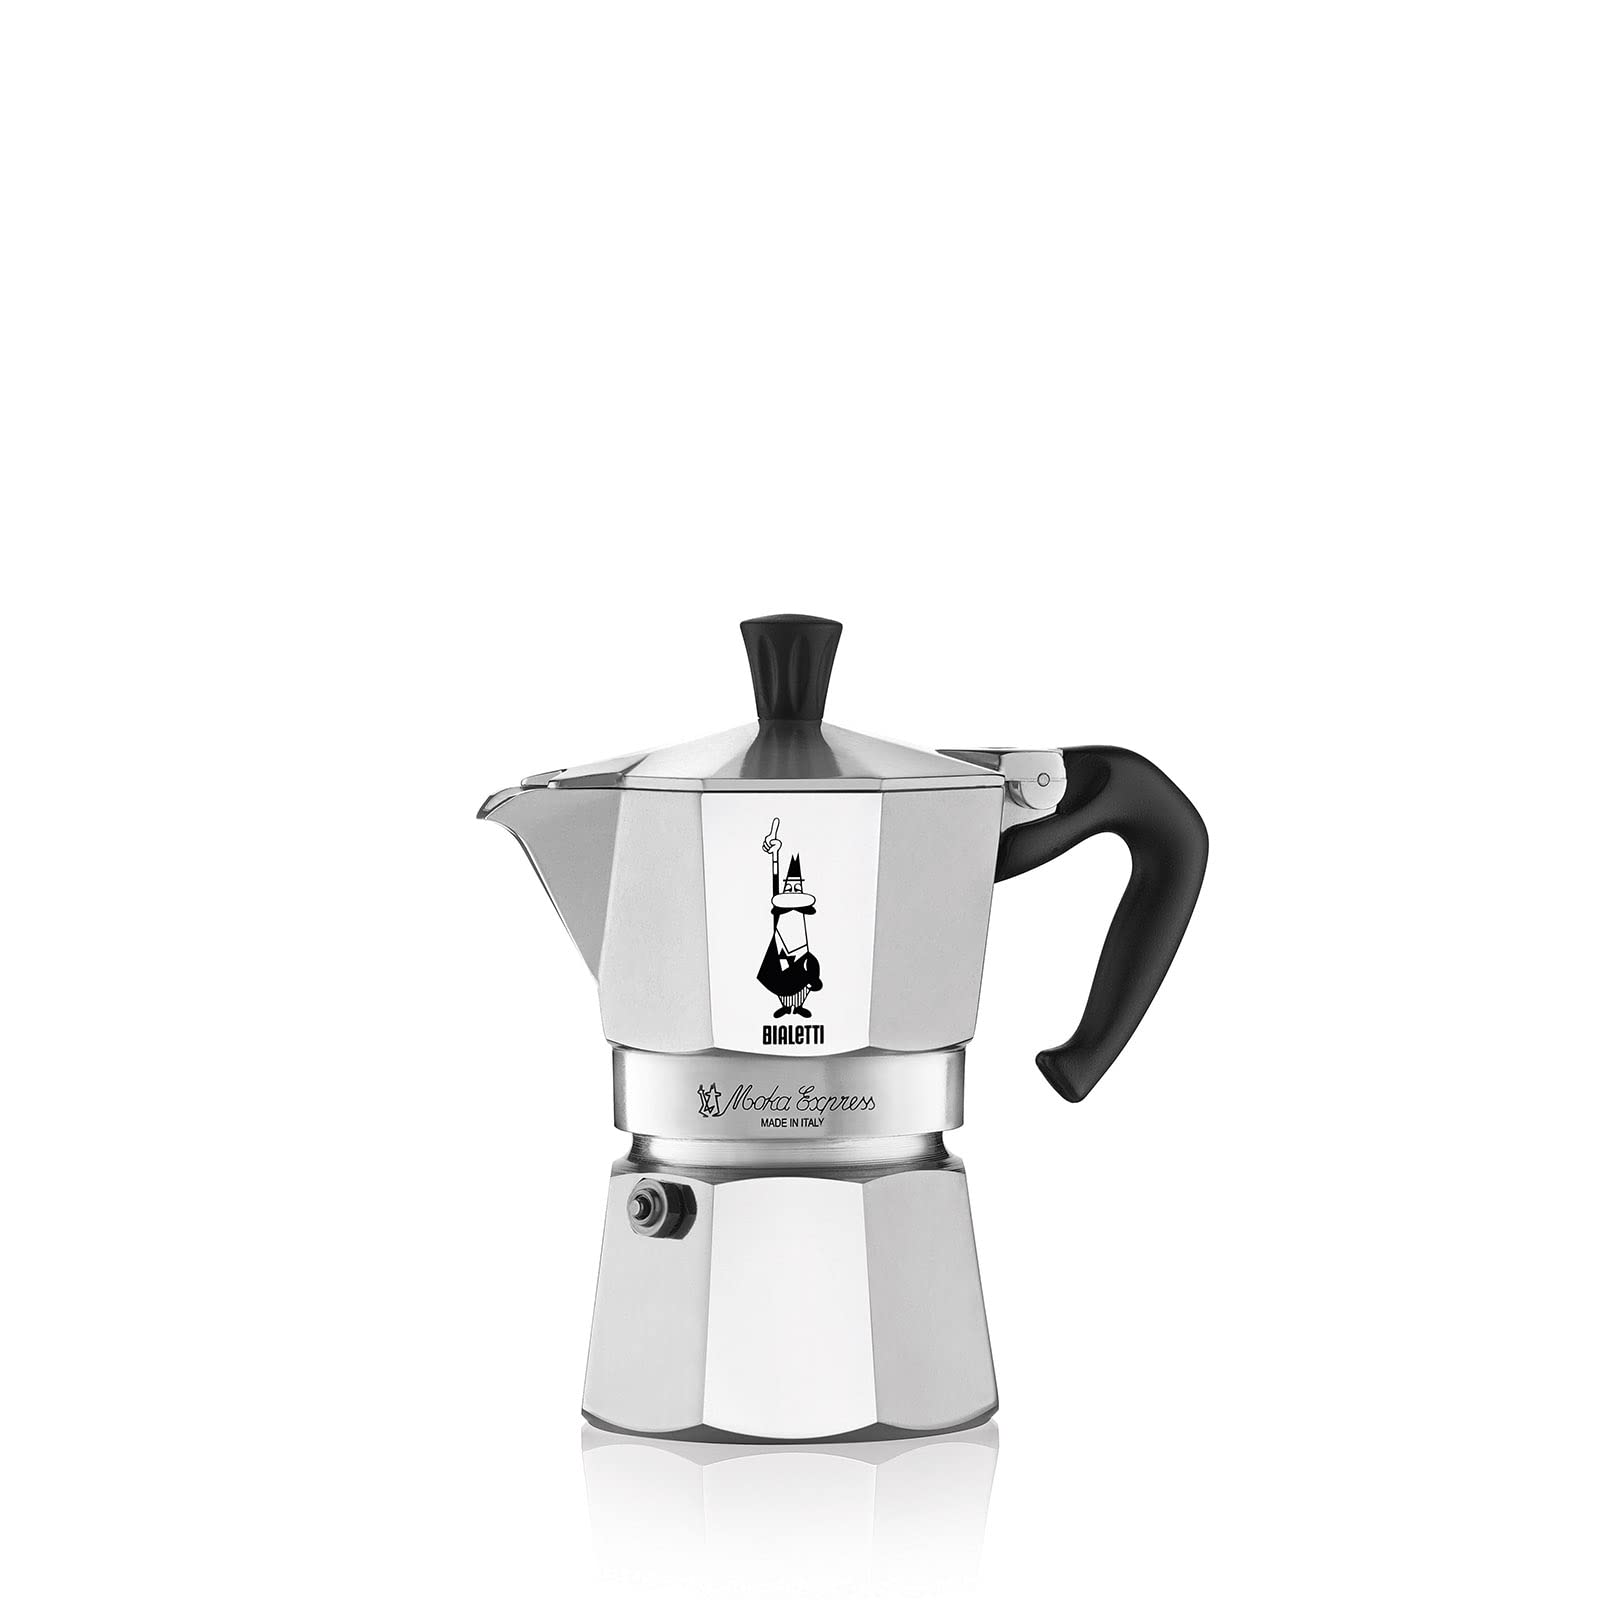 Bialetti - Moka Express: Ikonische Espressomaschine für die Herdplatte, macht echten Italienischen Kaffee, Moka-Kanne 3 Tassen (130ml), Aluminium, Silber